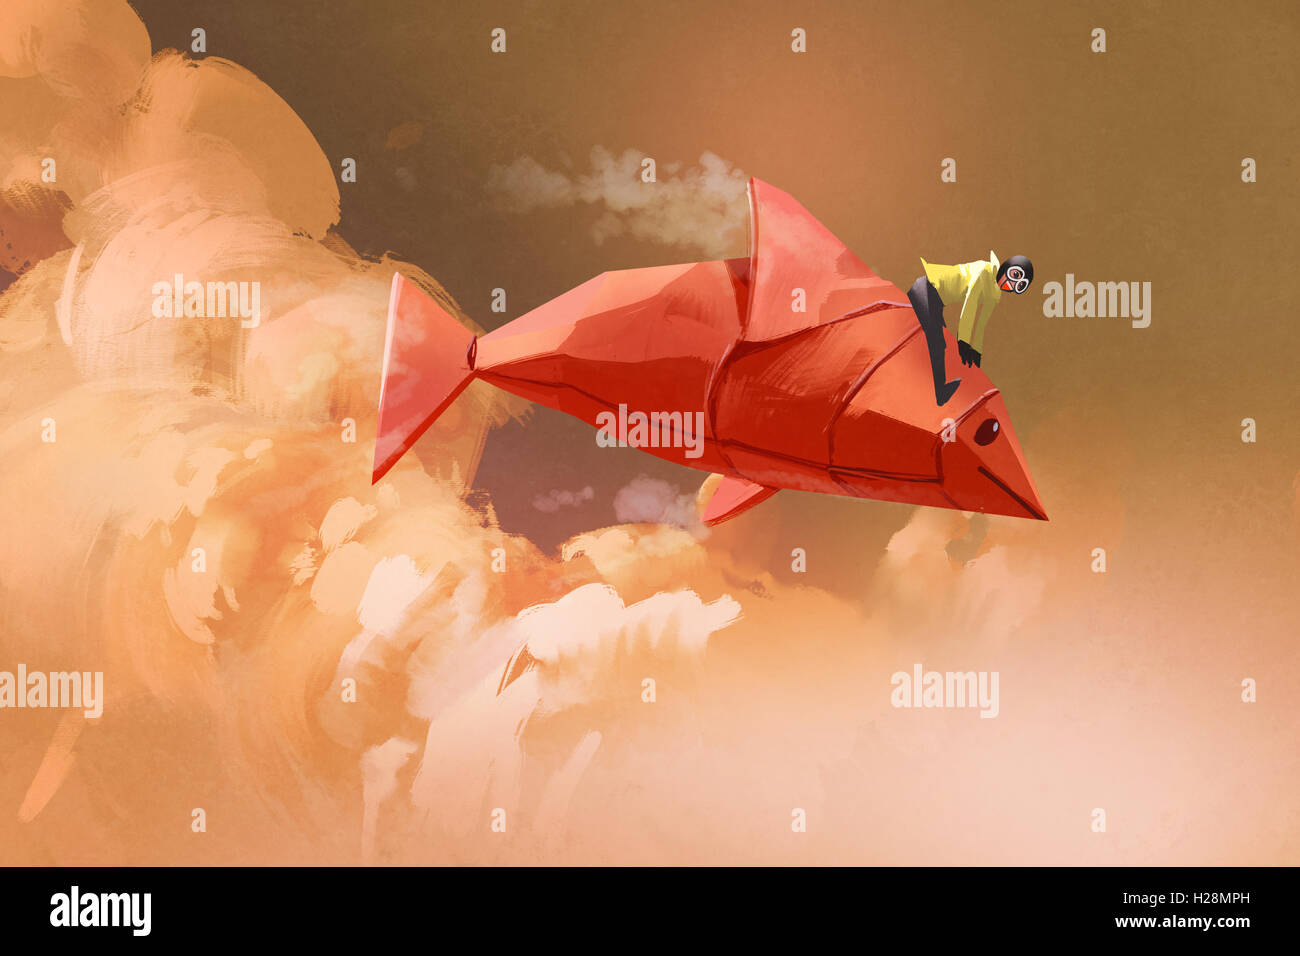 Ragazza a cavallo sulla carta origami pesce rosso nelle nuvole, illustrazione pittura Foto Stock